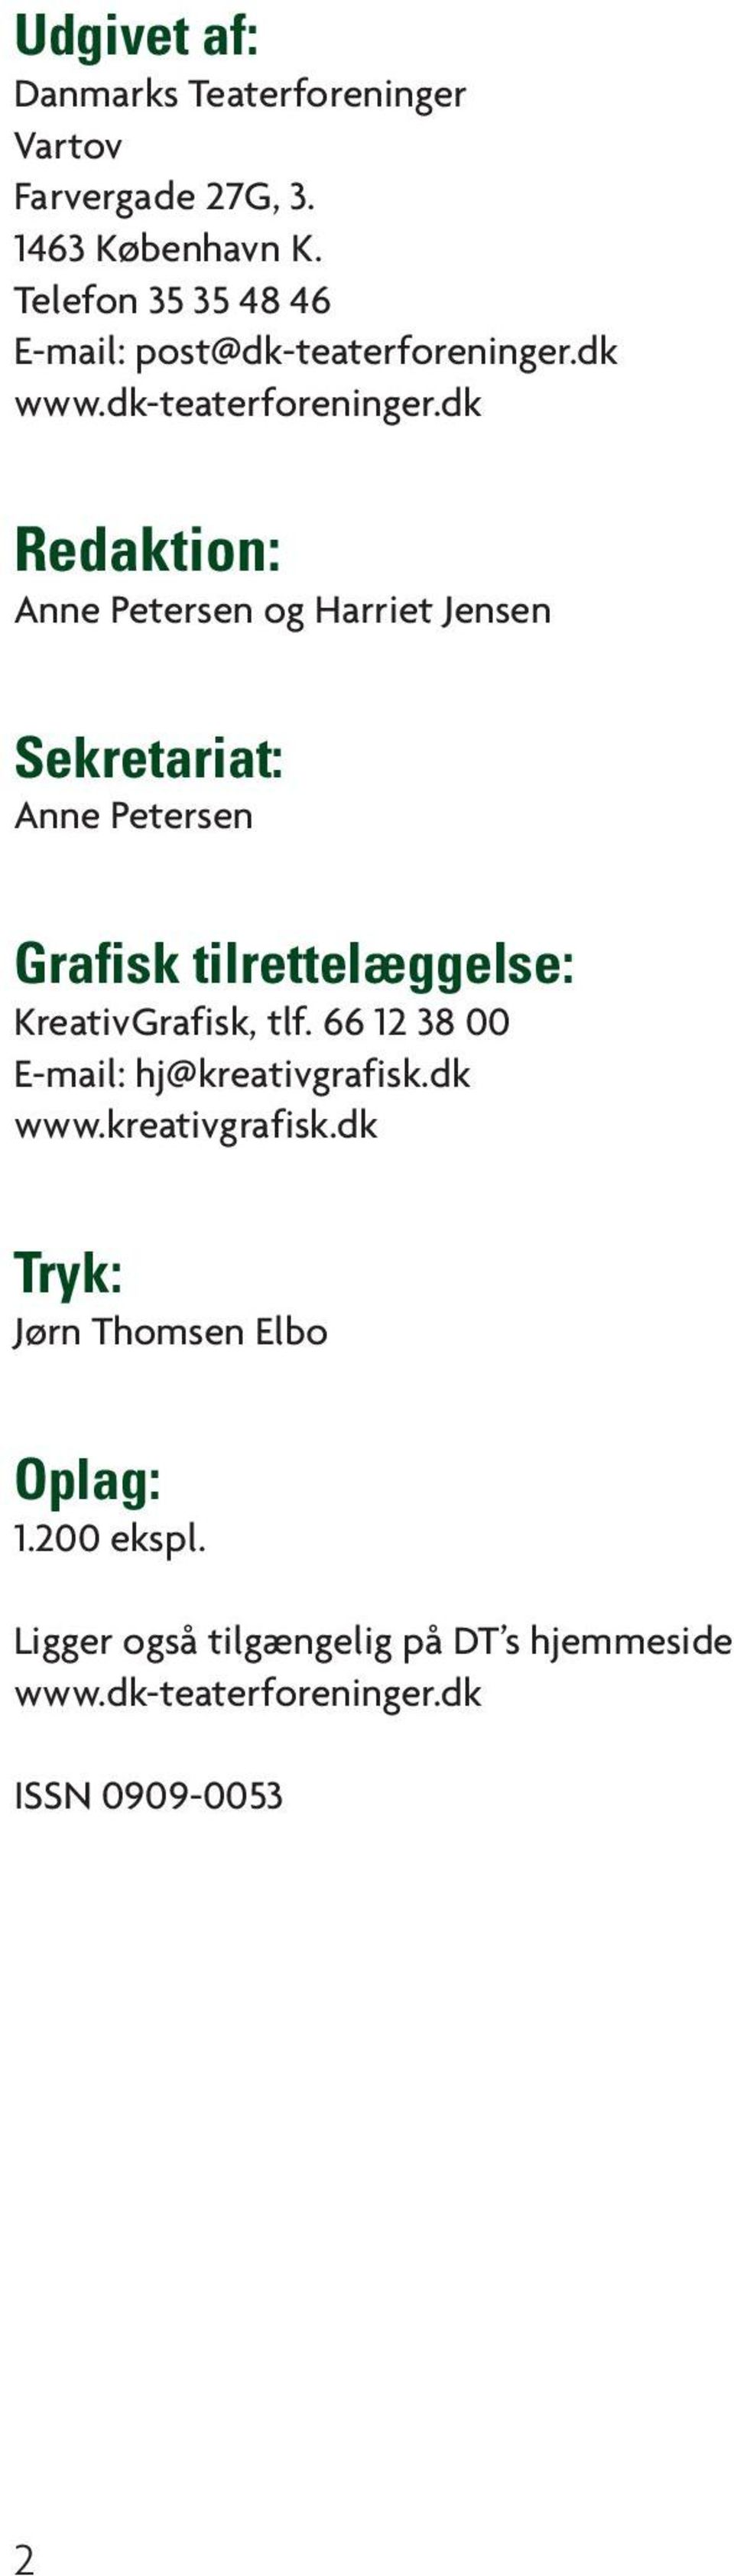 dk www.dk-teaterforeninger.